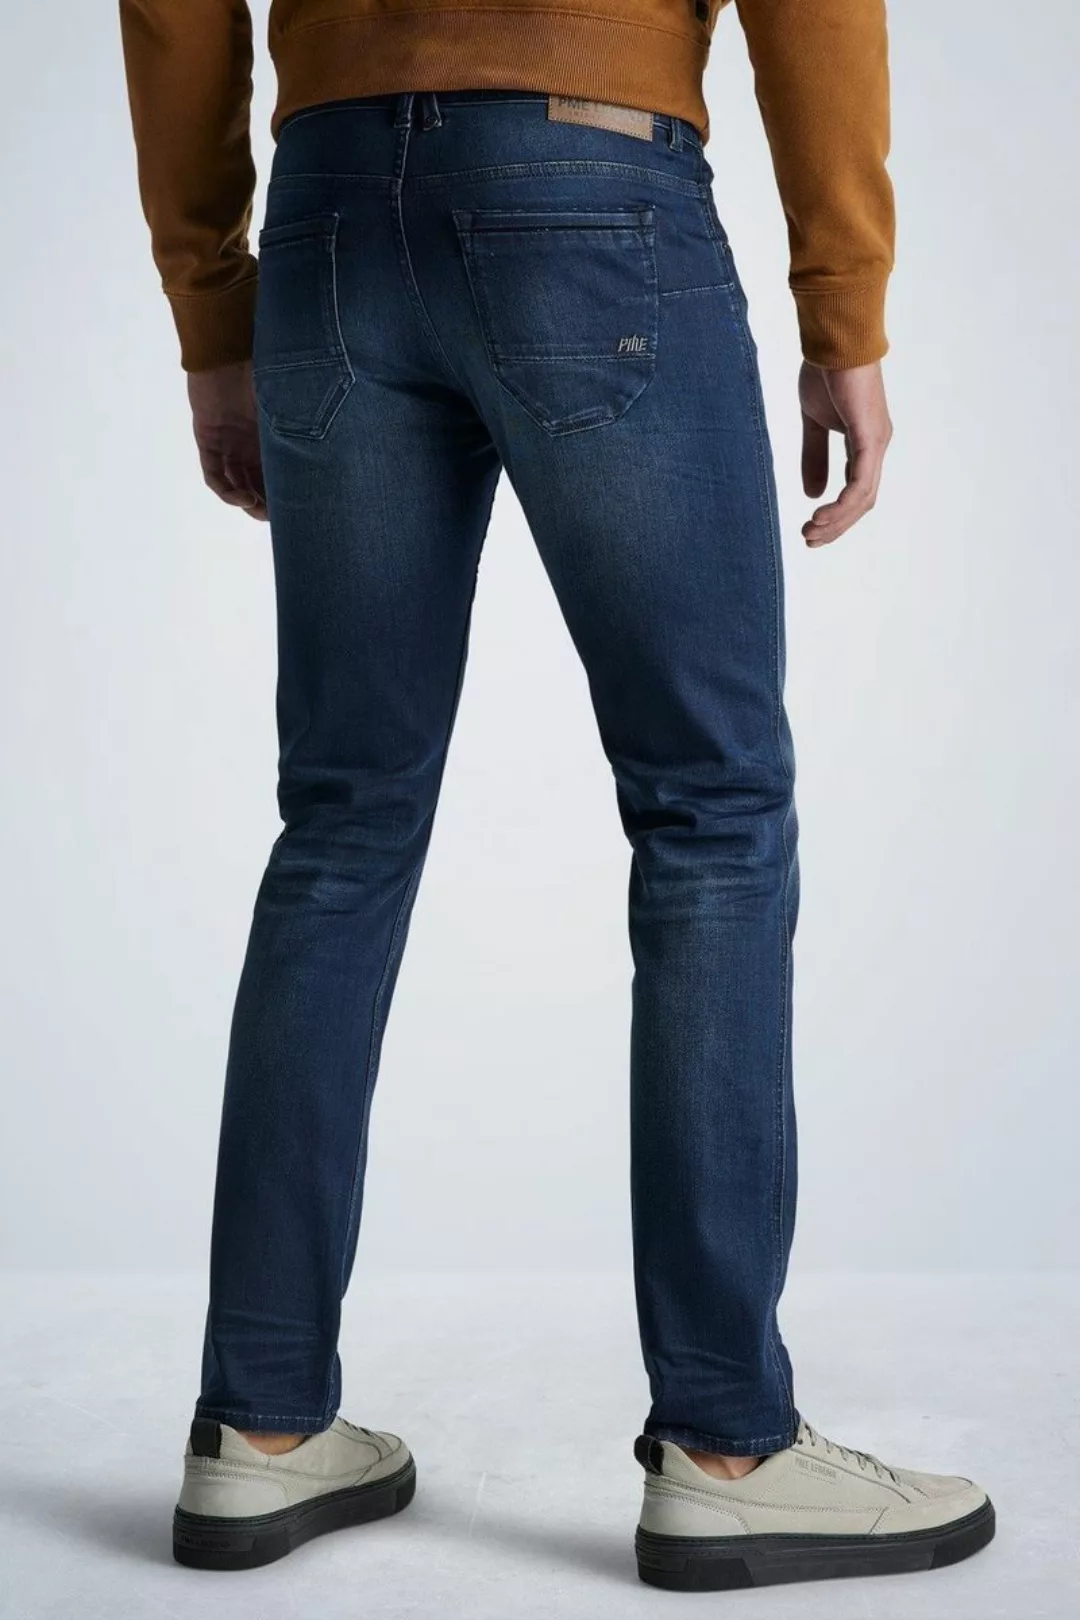 PME Legend Nightflight Jeans Dunkelblau NBW - Größe W 34 - L 34 günstig online kaufen